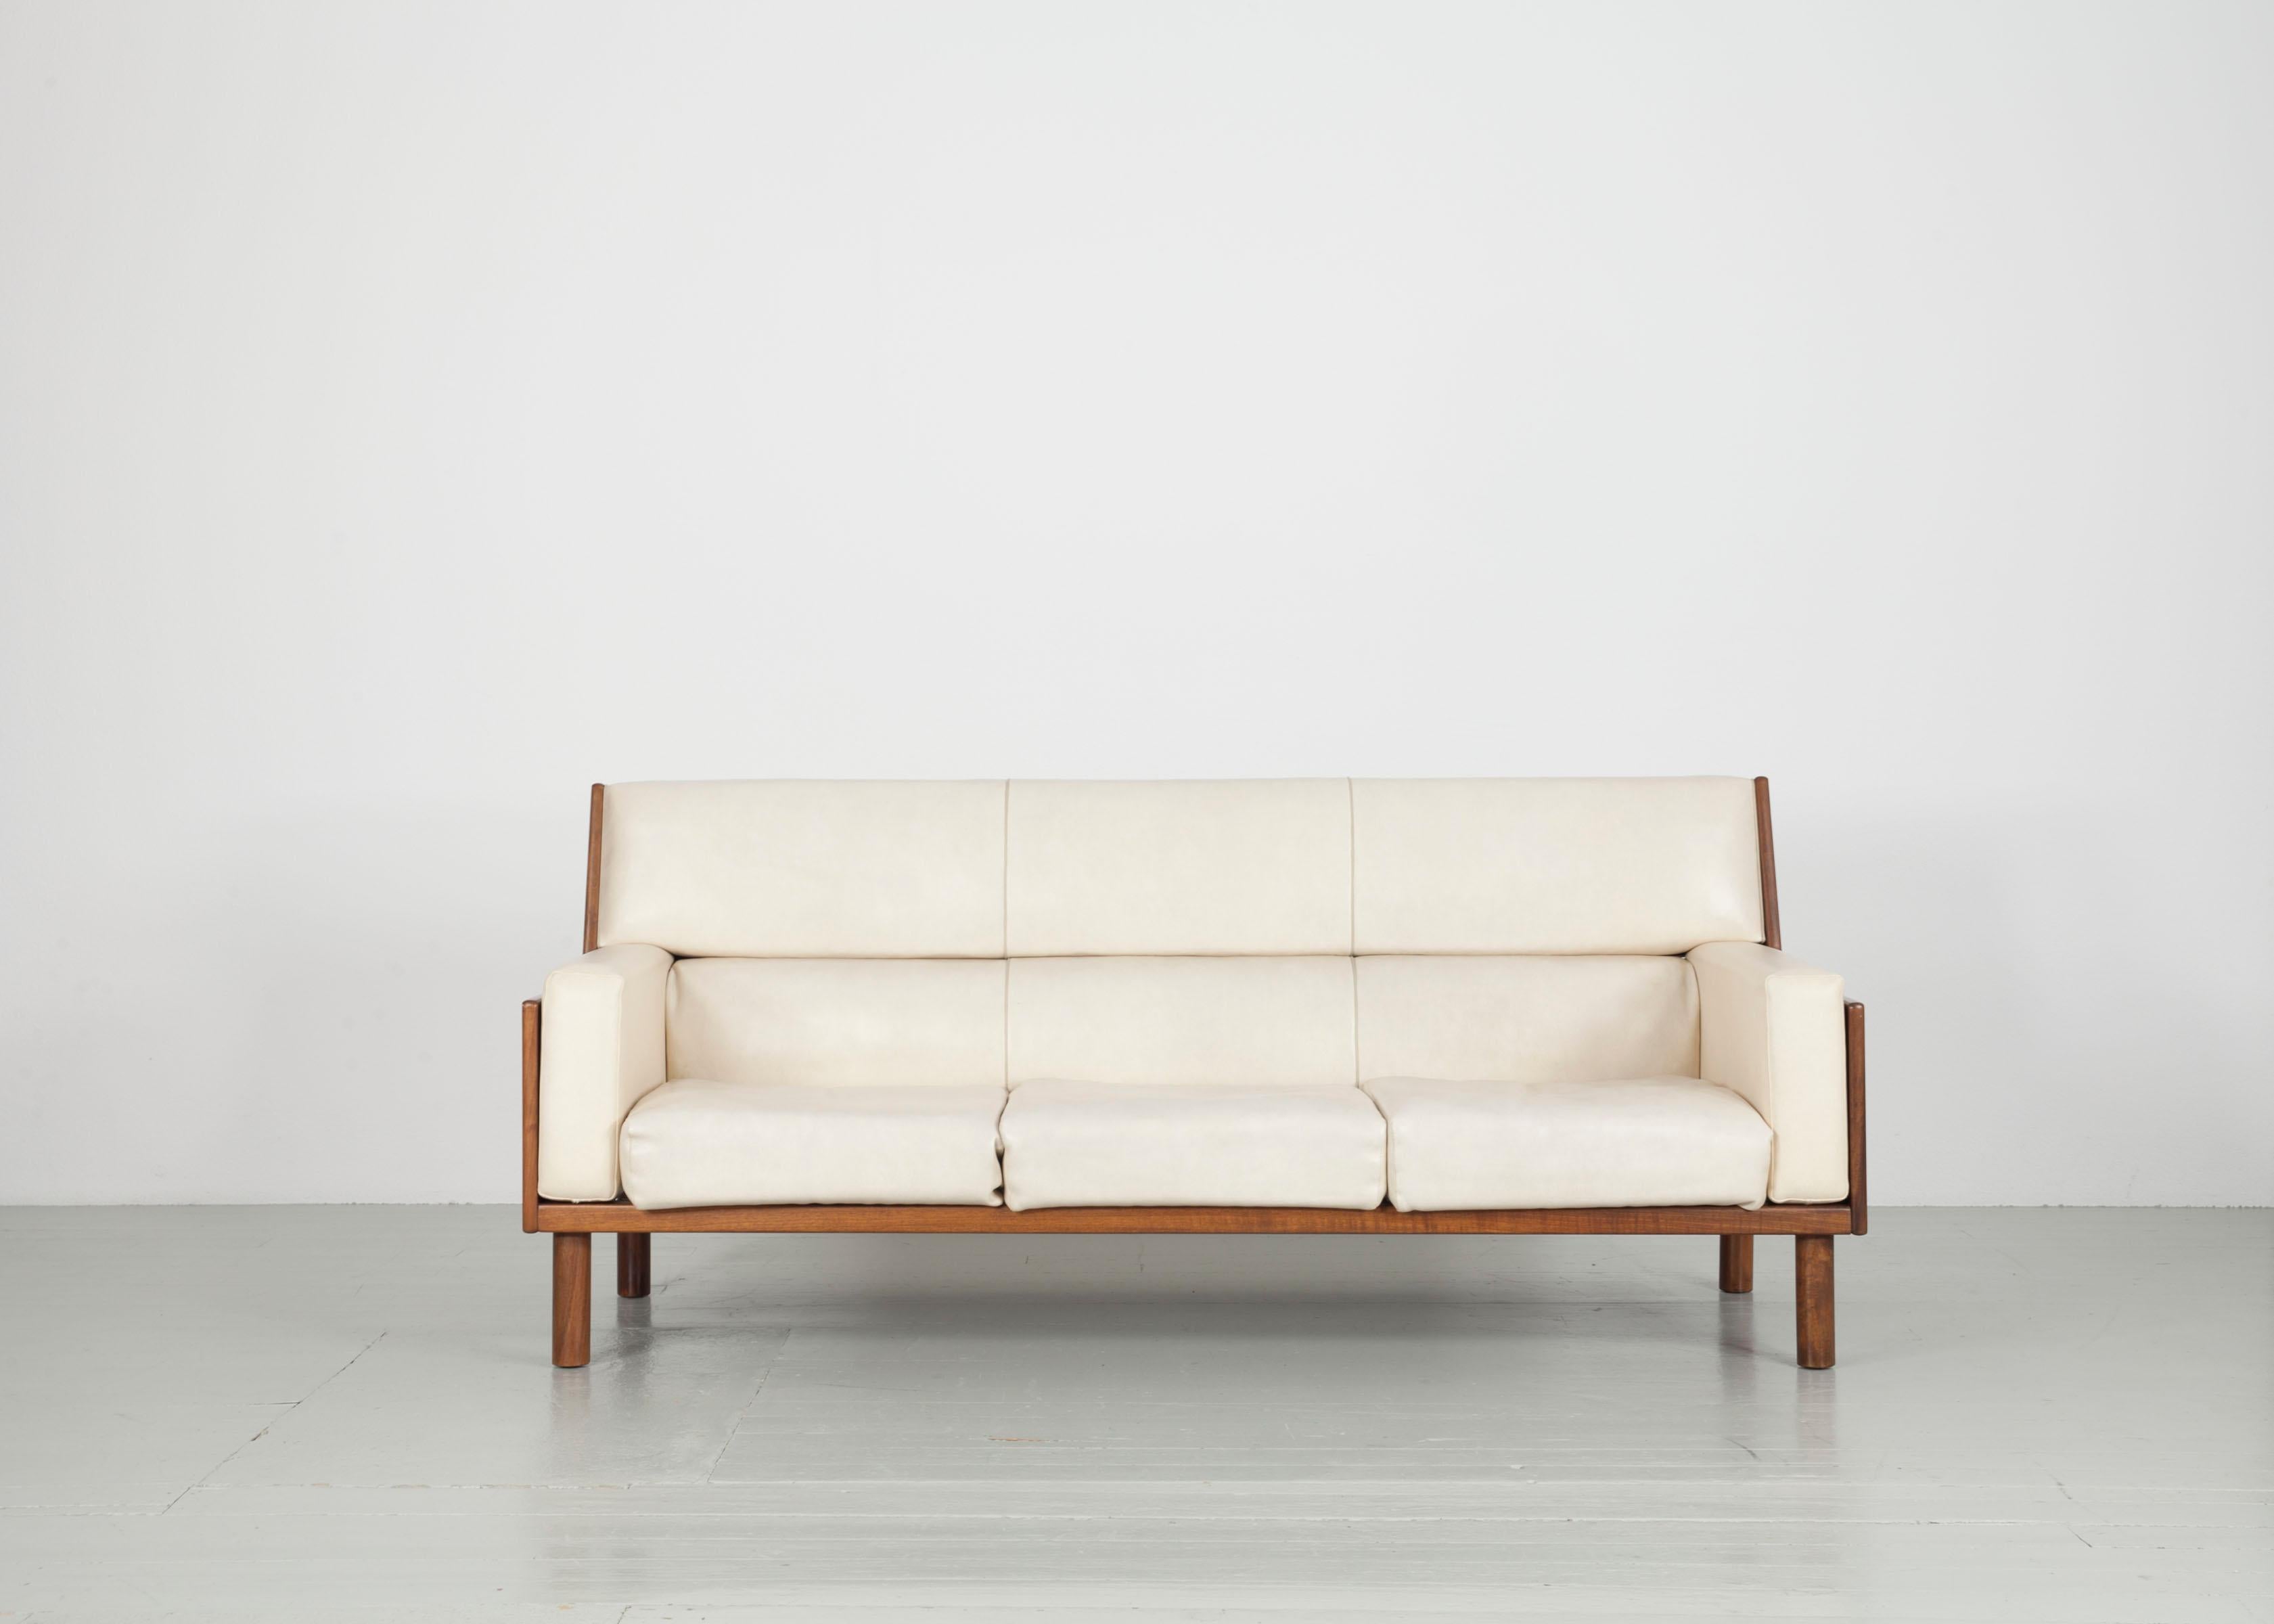 Dieses Set aus Sesseln und einem Sofa wurde in den 1960er Jahren von Anonima Castelli in Italien hergestellt. Die Garnitur besteht aus zwei Sesseln und einem dreisitzigen Sofa. Das weiße Kunstleder harmoniert wunderbar mit dem warmen Mahagoniholz